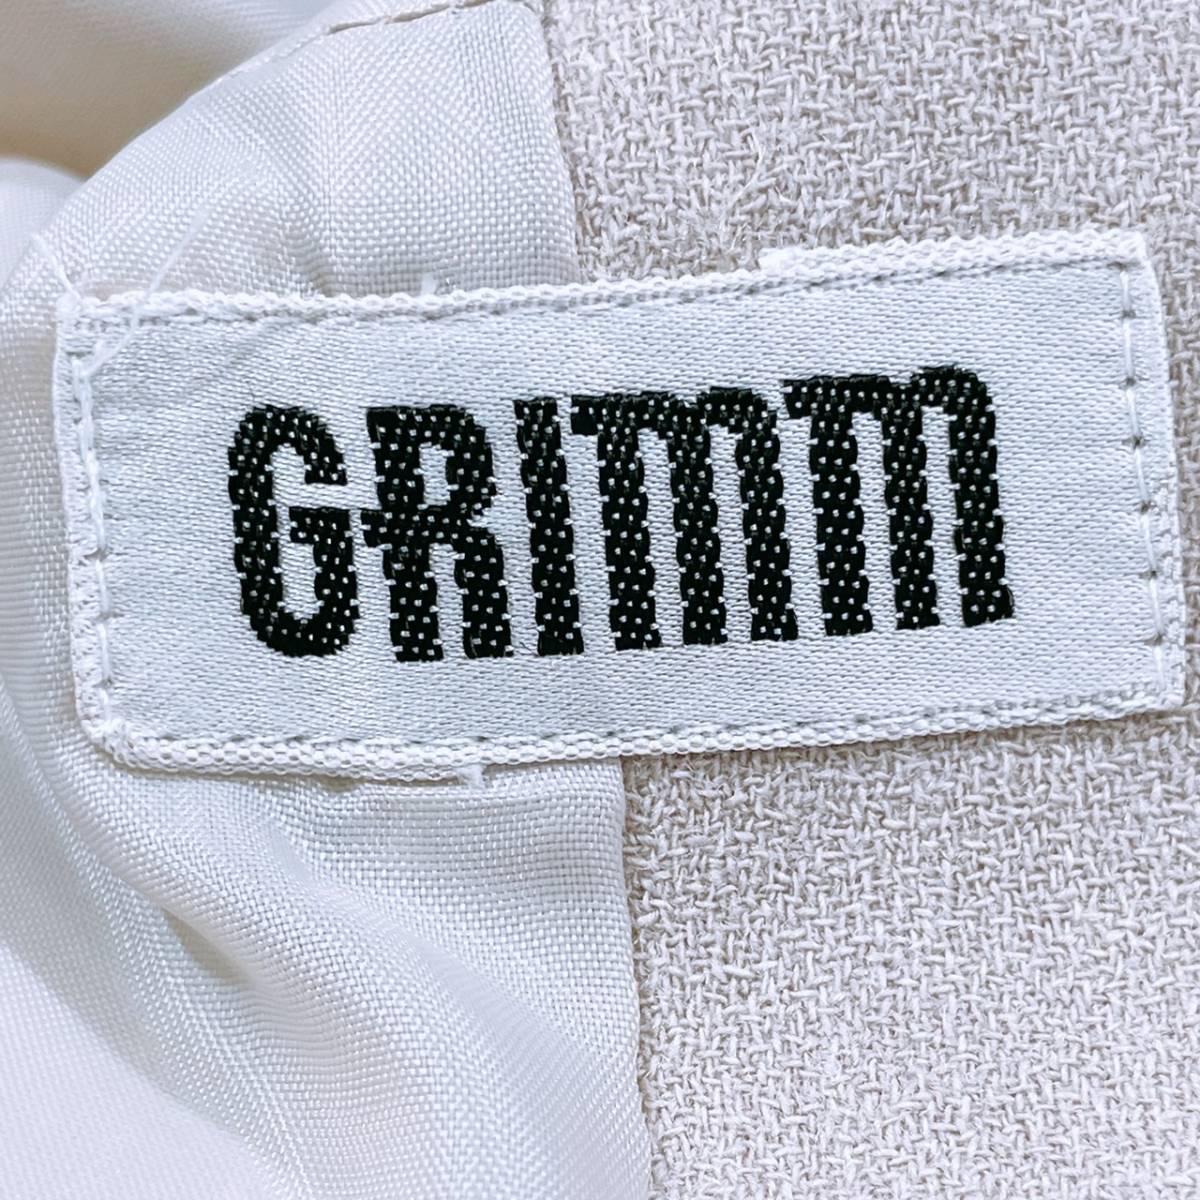 【21394】 GRIMM グリム ファッション レディース アウター ジャケット 長袖 ナチュラル 前ボタン ベージュ シンプル 9 S 日本製